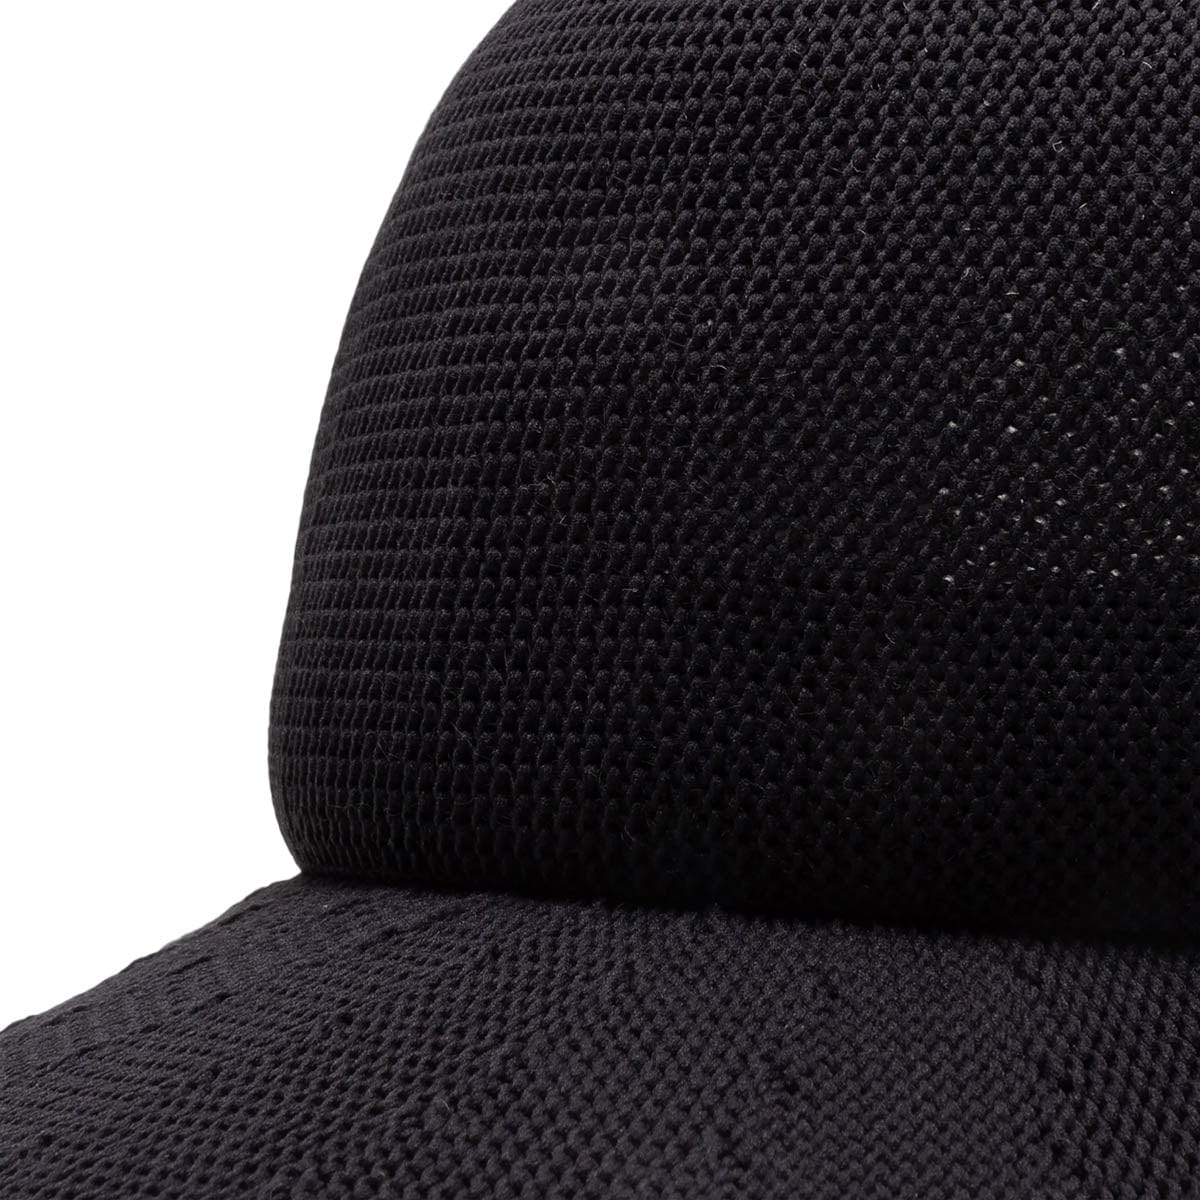 ポケモンCFCL MESH KNIT CAP 1 / BLACK 帽子